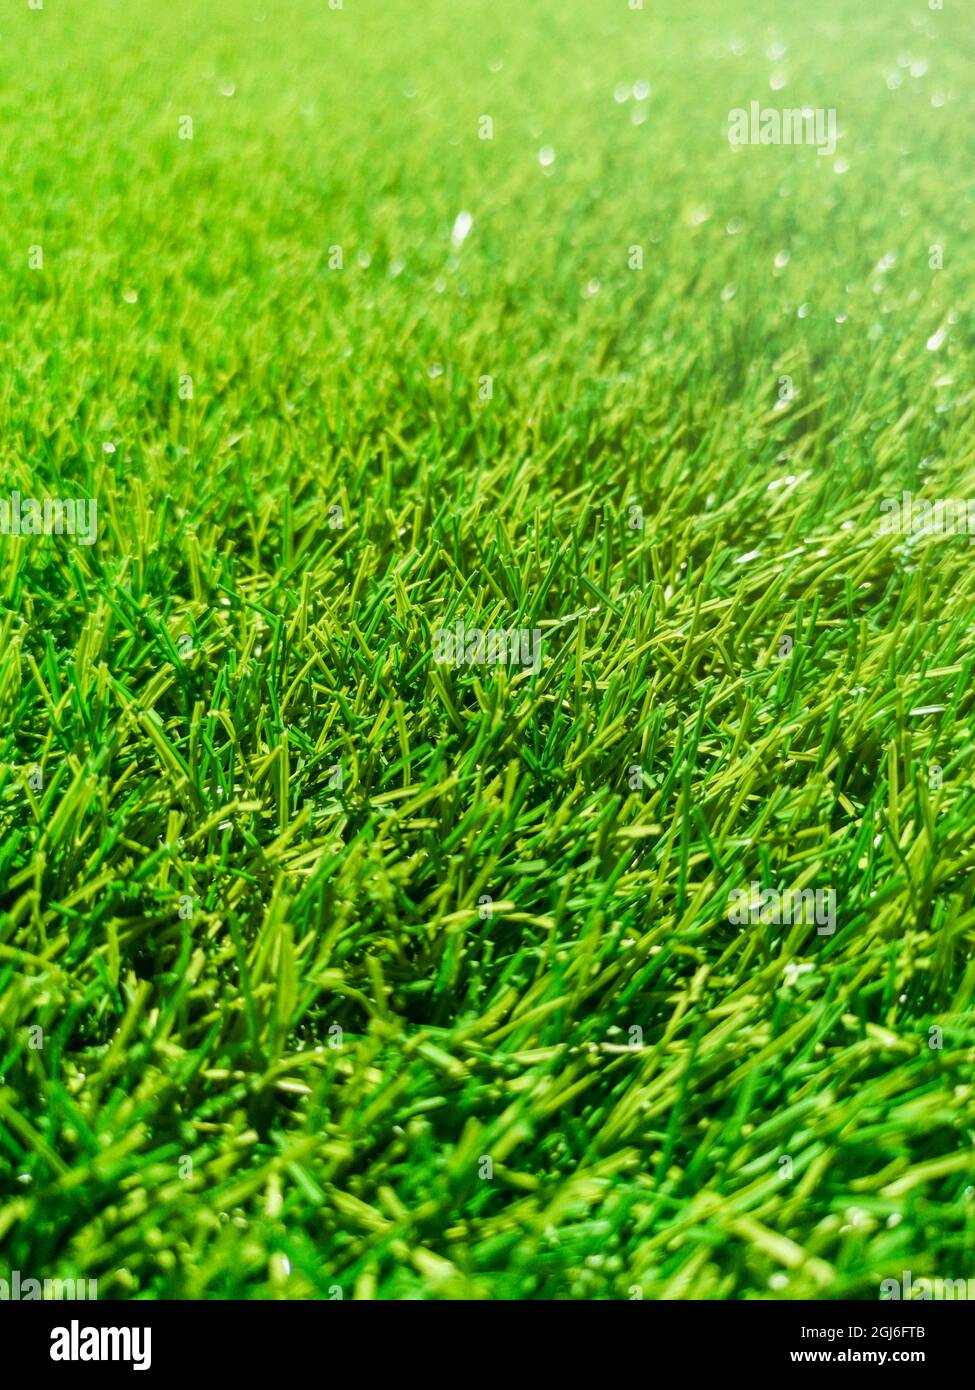 Artificial green grass, green grass, grass background texture Stock Photo -  Alamy